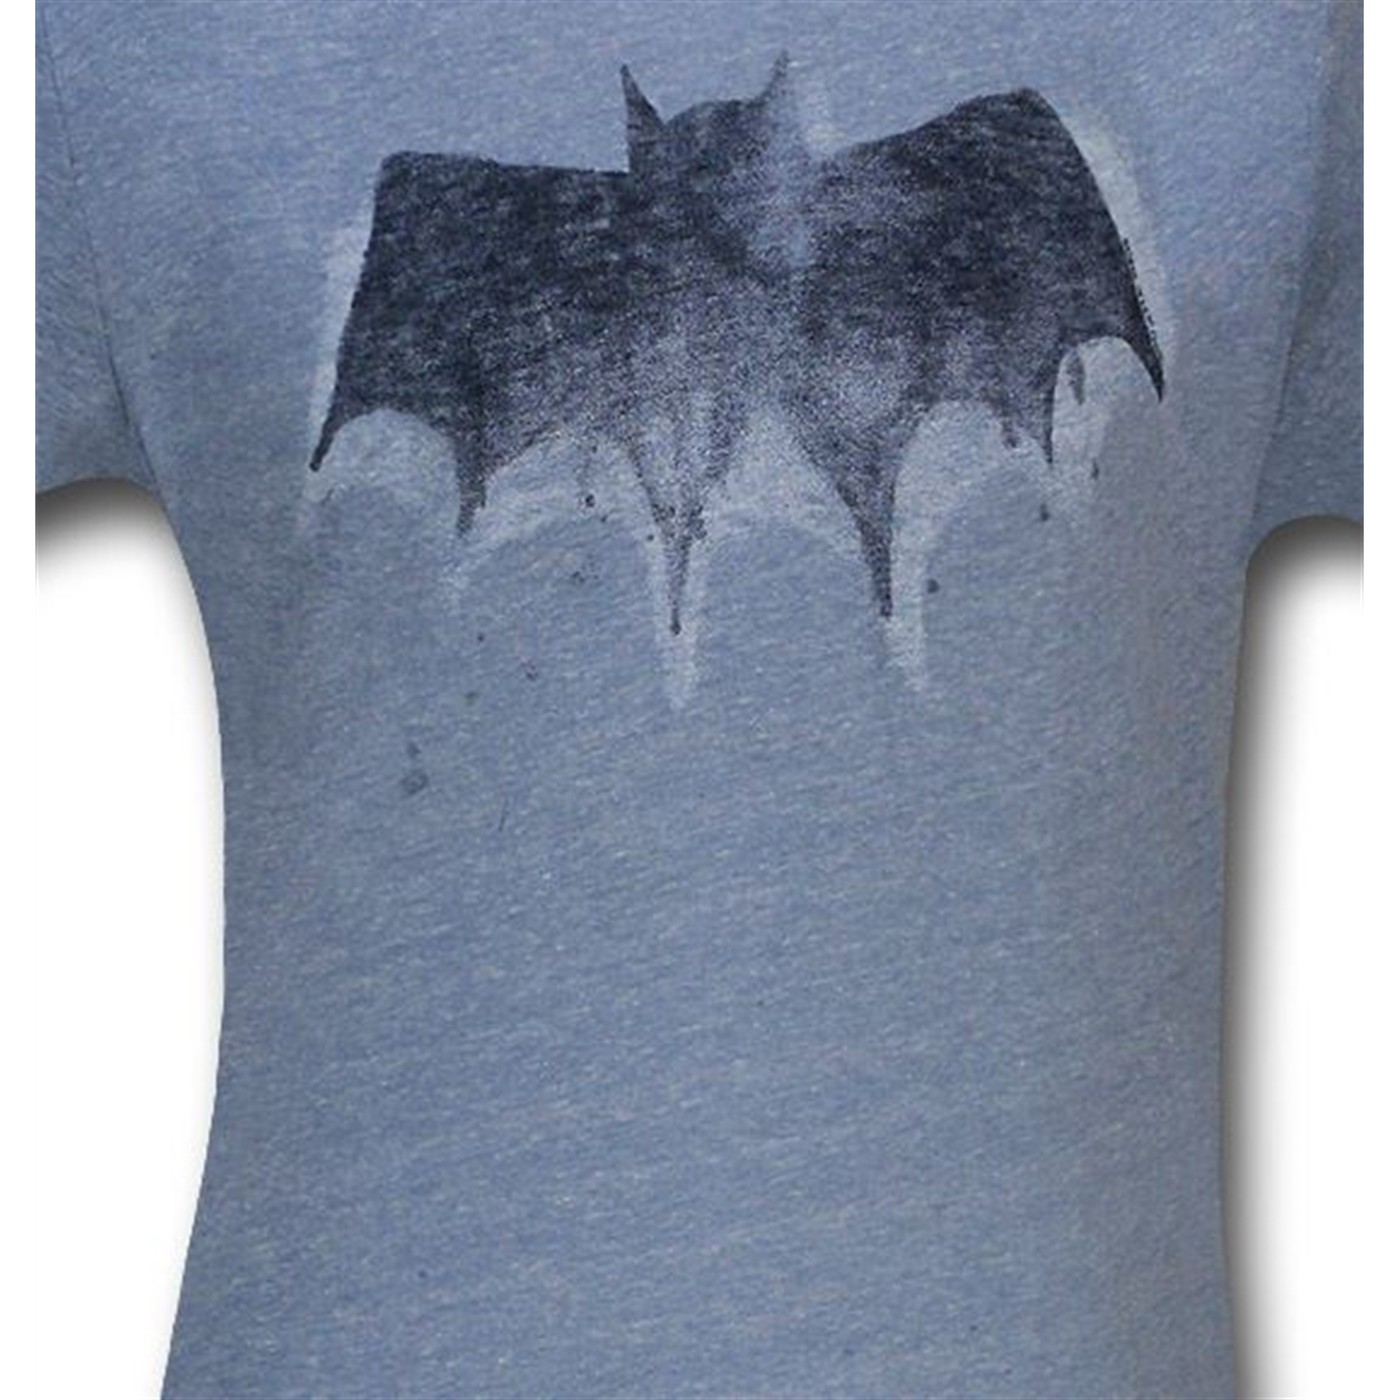 Batman Blue Faded Symbol Ringer Junk Food T-Shirt